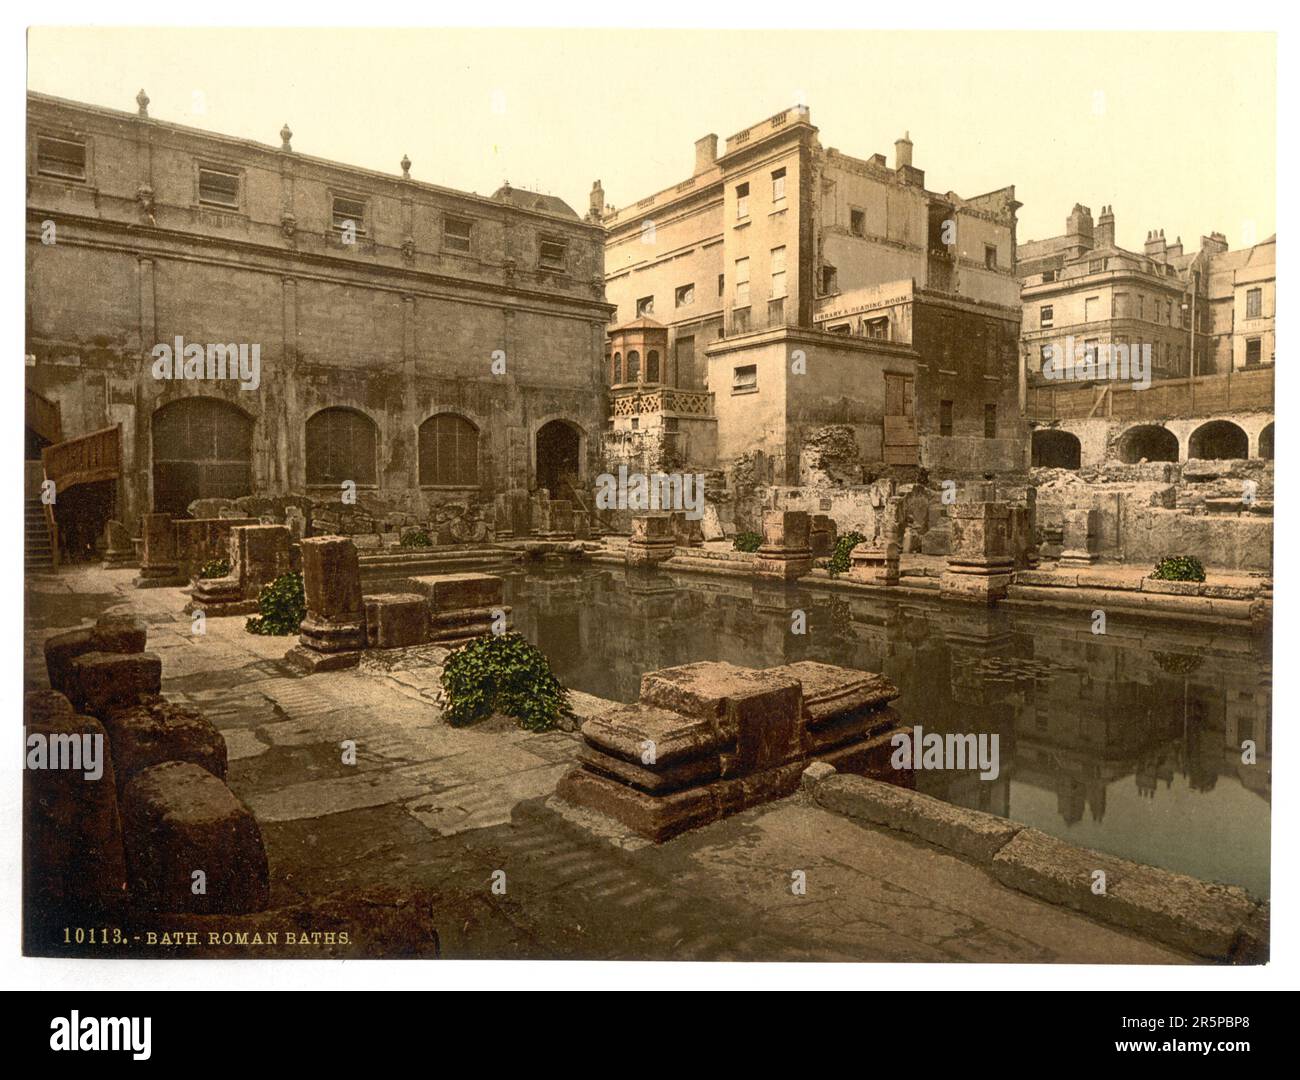 Photochrom prints, Color, 1900, 1890, Roman Baths and Abbey,  Bath, England Stock Photo